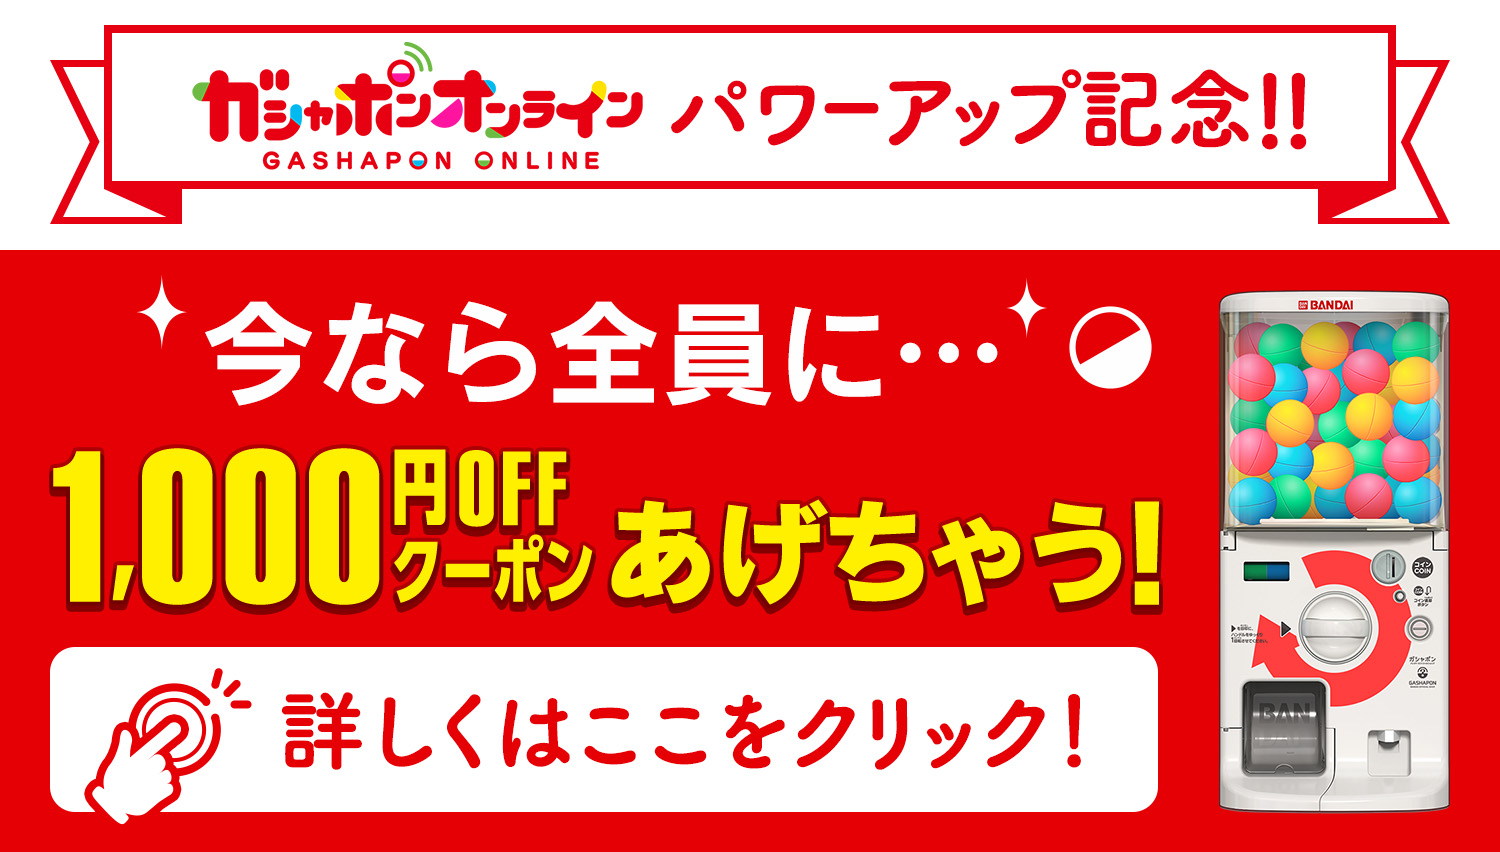 ガシャポンオンラインパワーアップ記念!! 今なら全員に1,000円OFFクーポンあげちゃう！